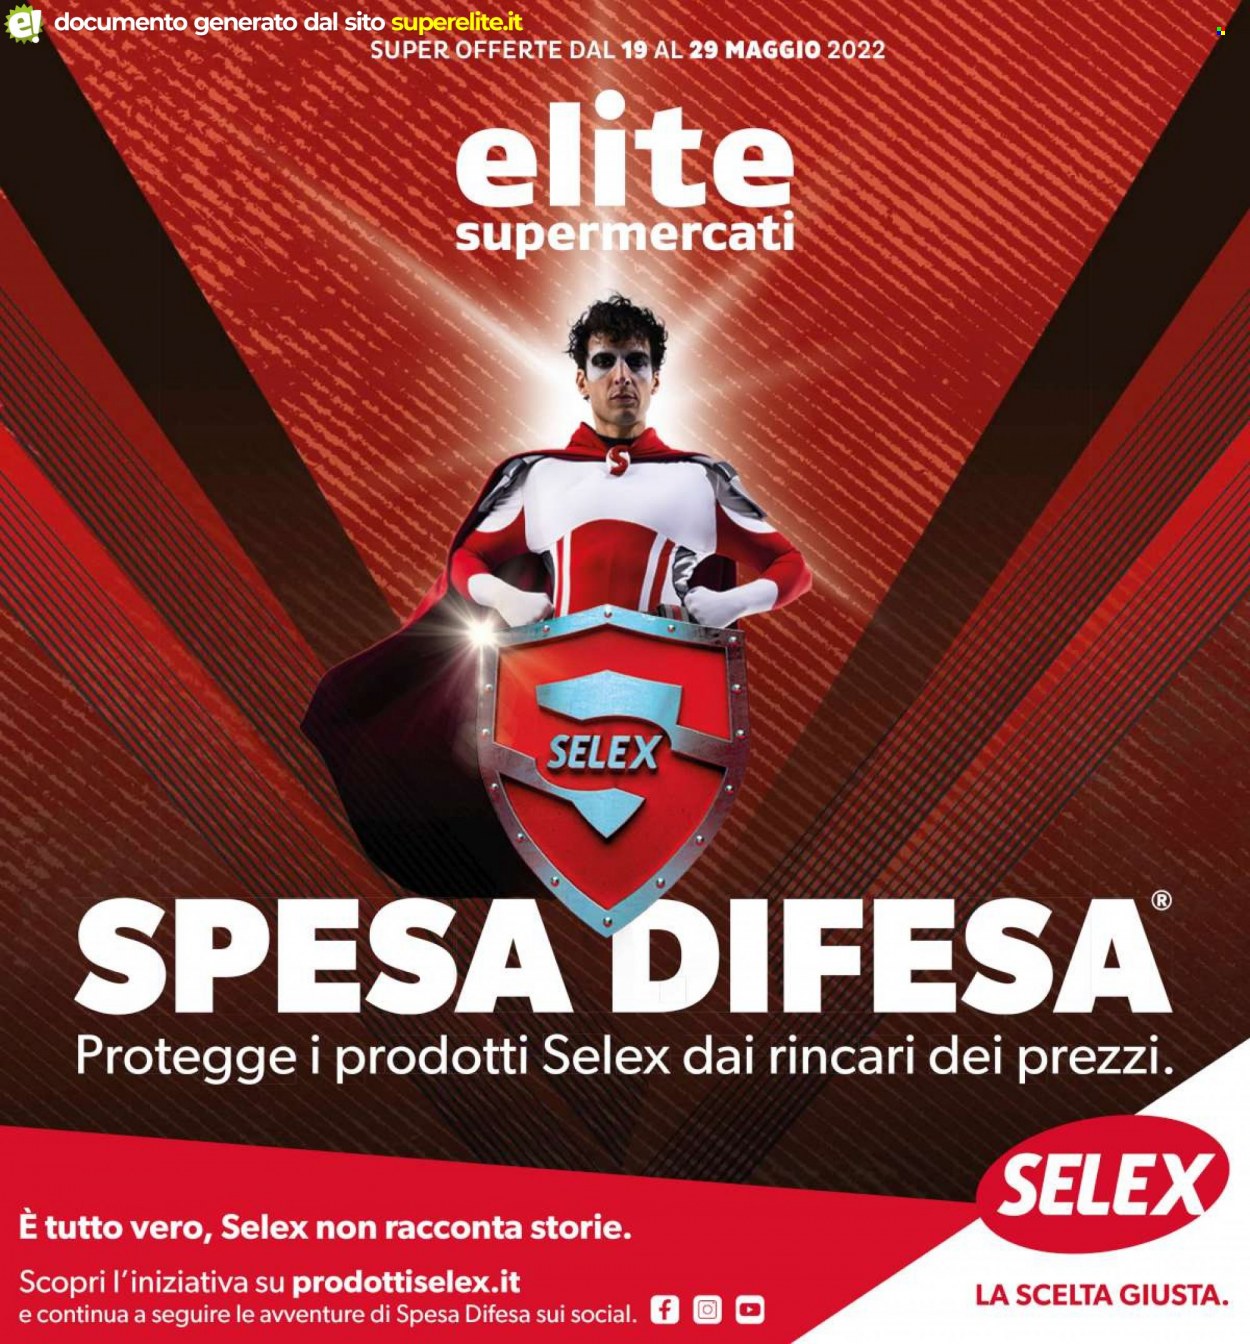 Volantino Elite Supermercati - 19.5.2022 - 29.5.2022.